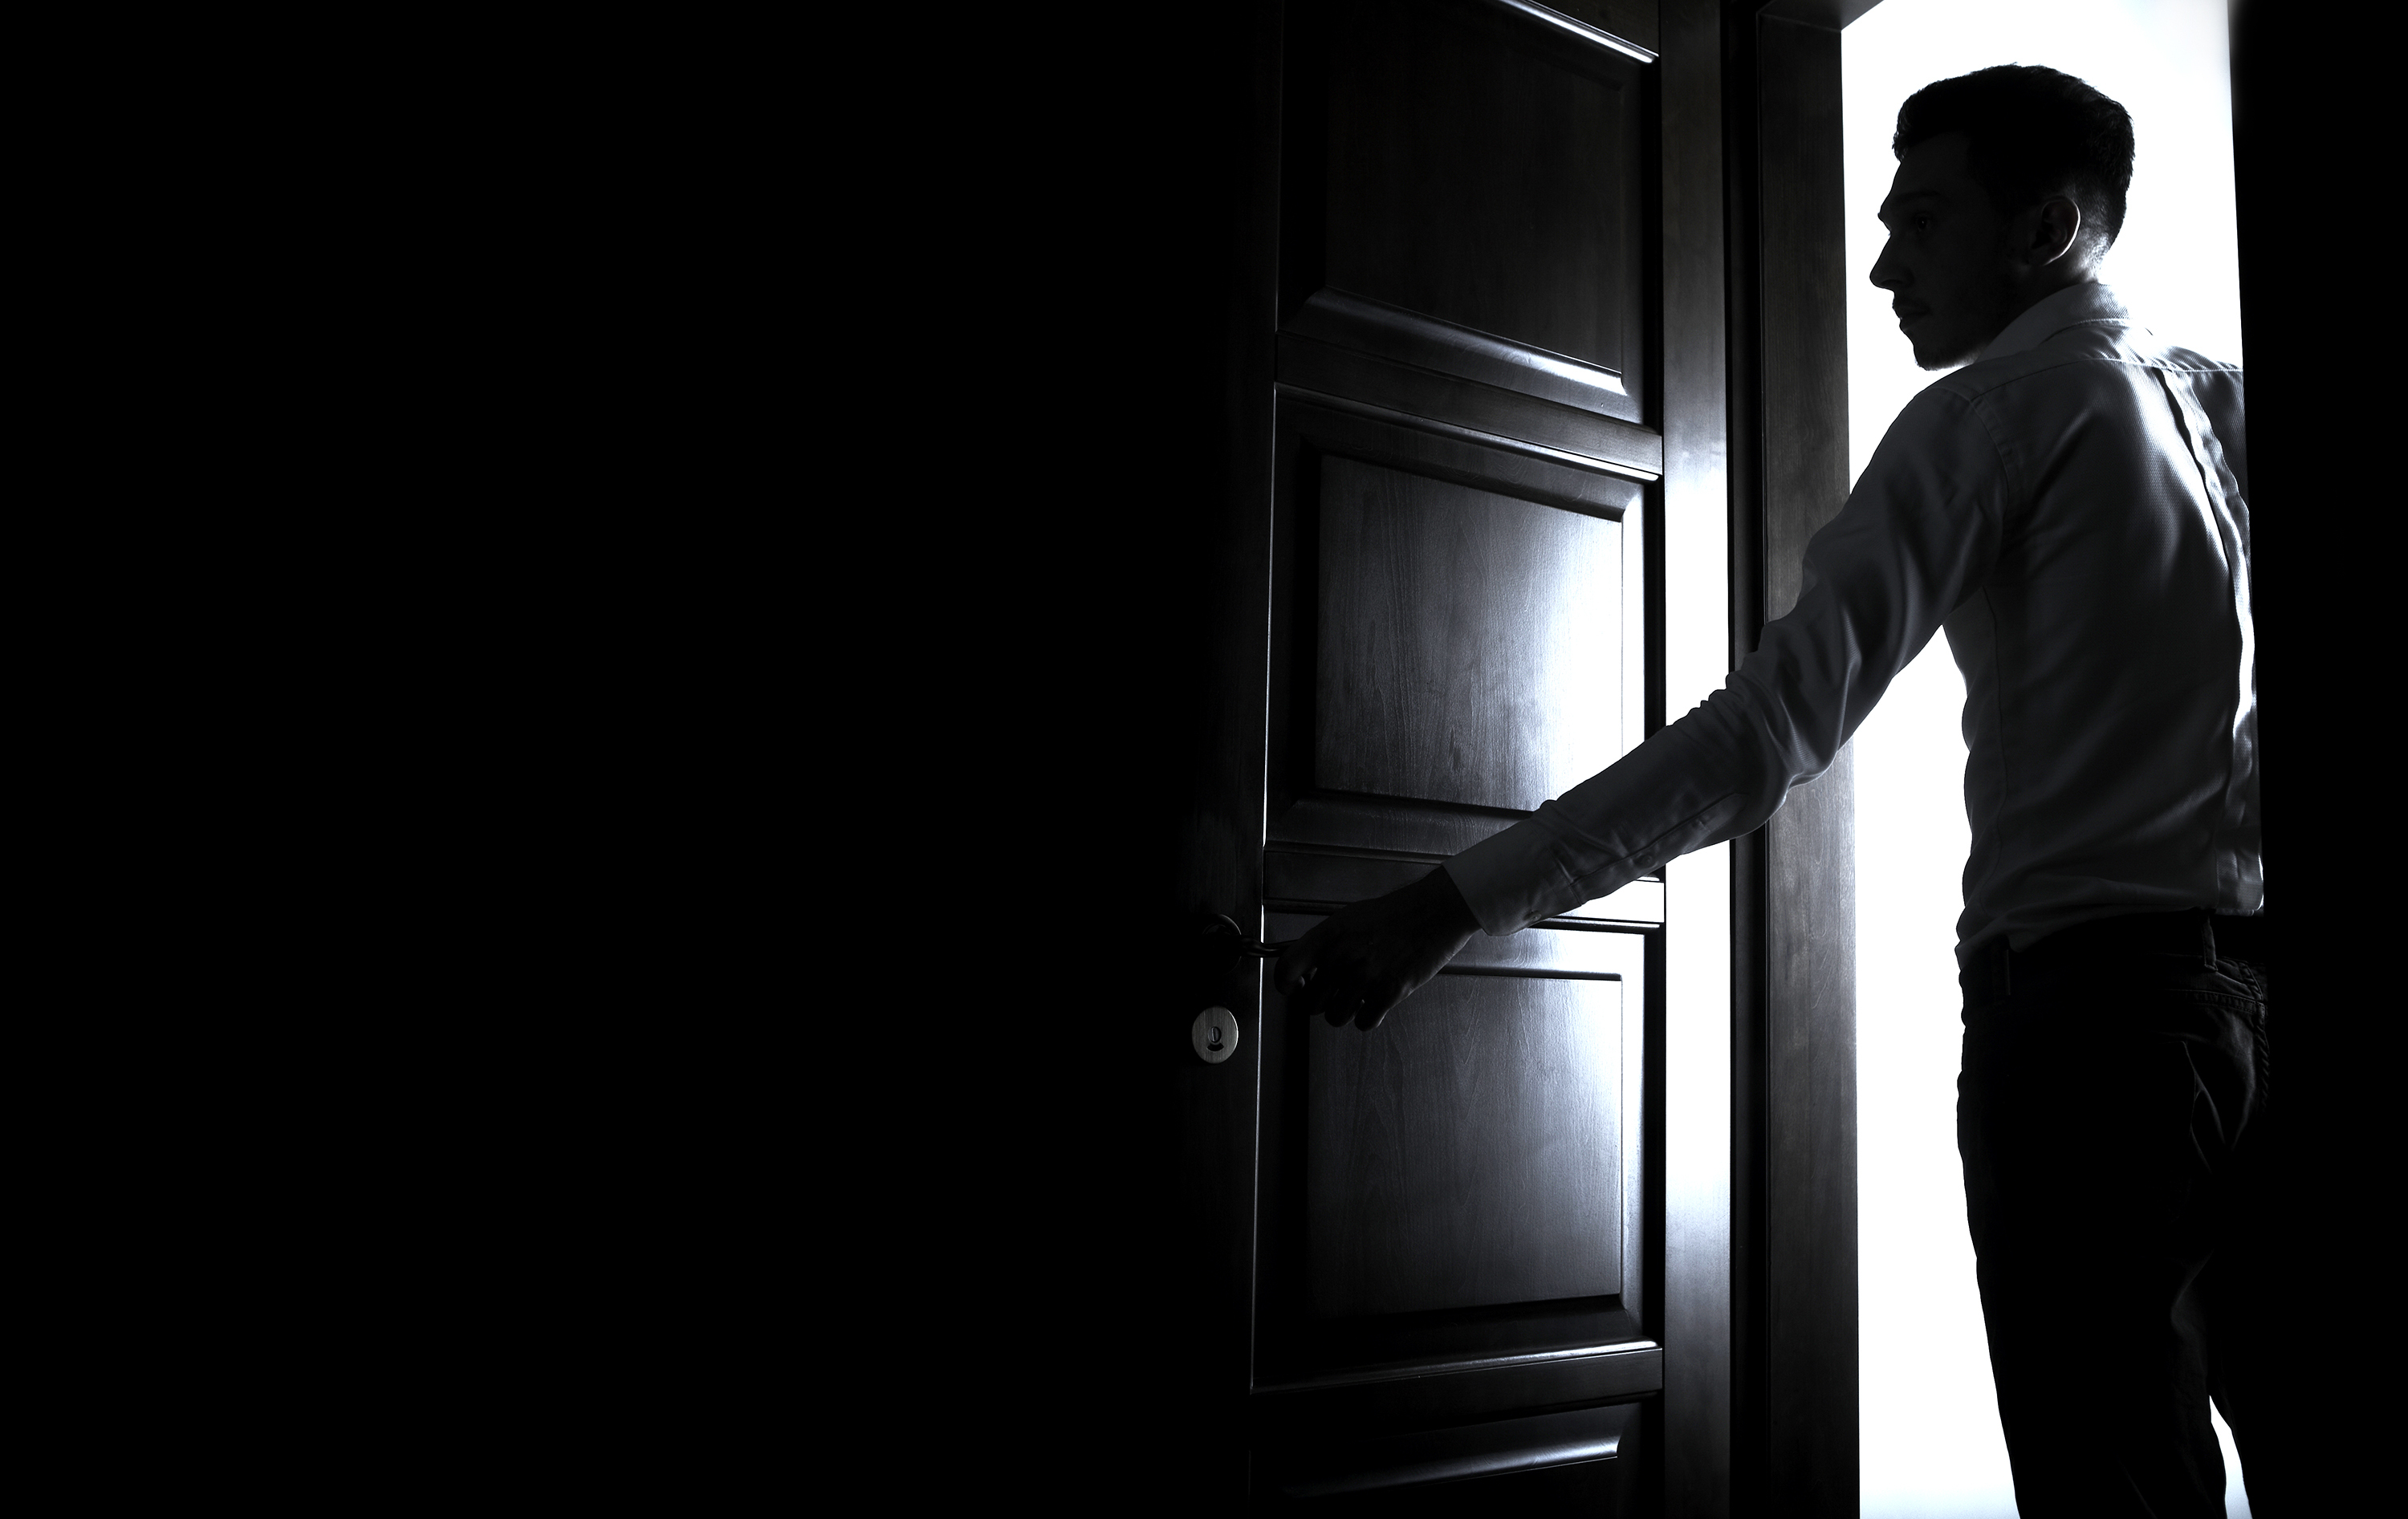 A man opens a door | Source: Shutterstock